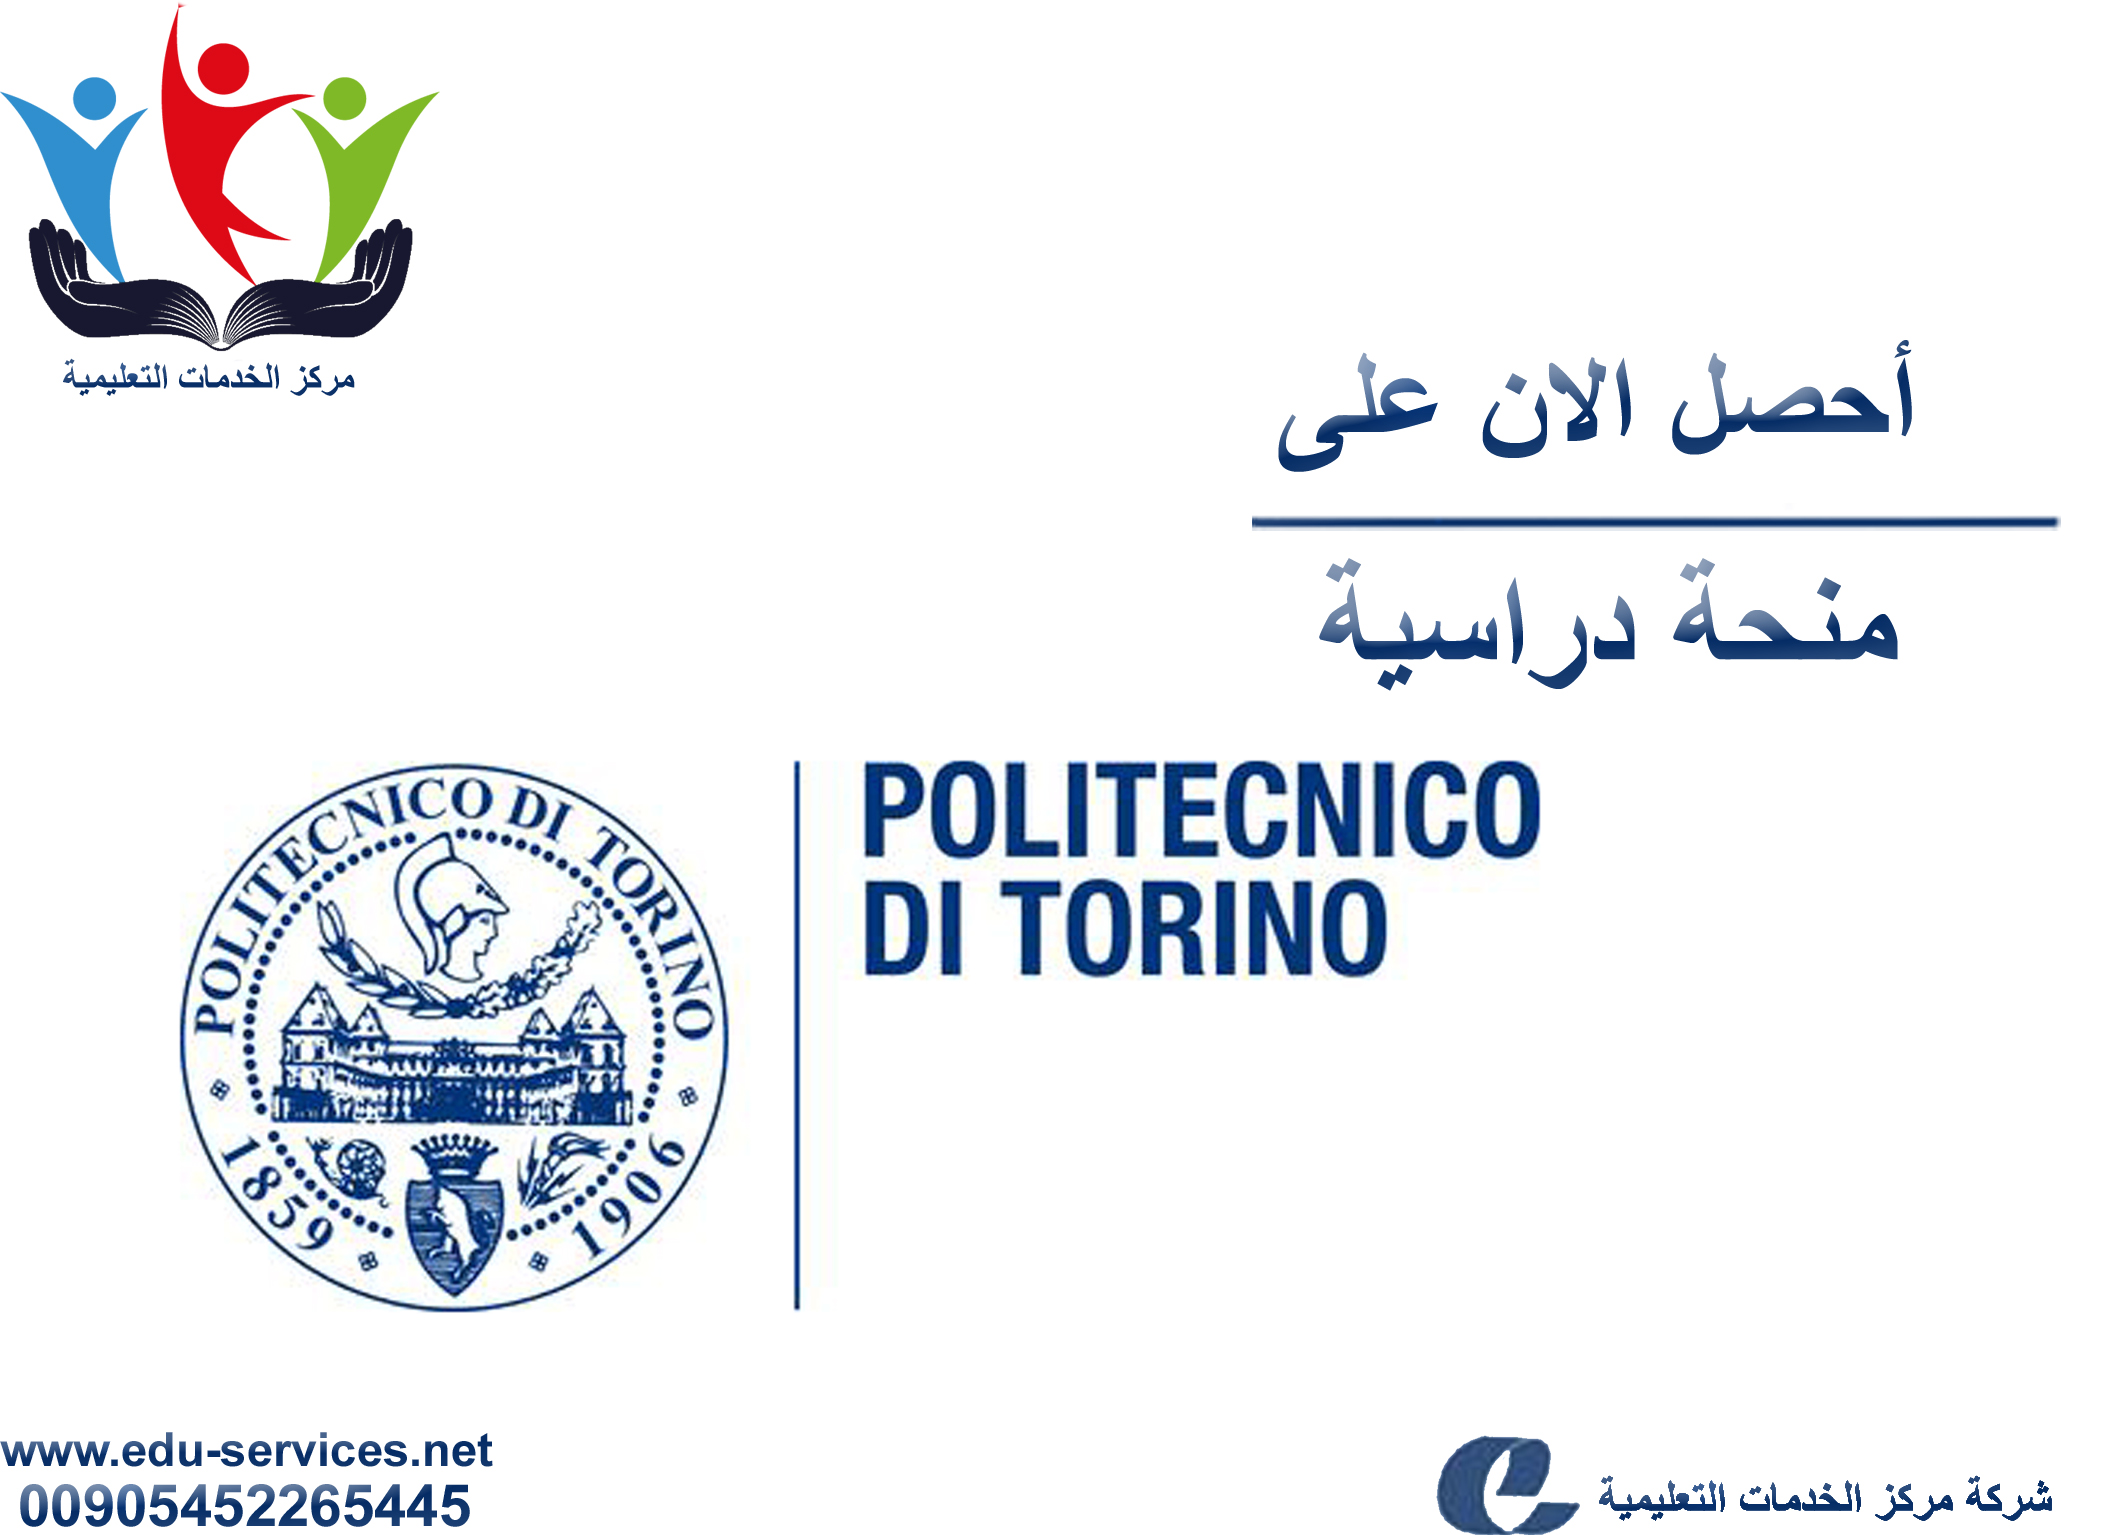 منح دراسية لدرجة الدكتوراه من Polito في إيطاليا للعام 2018